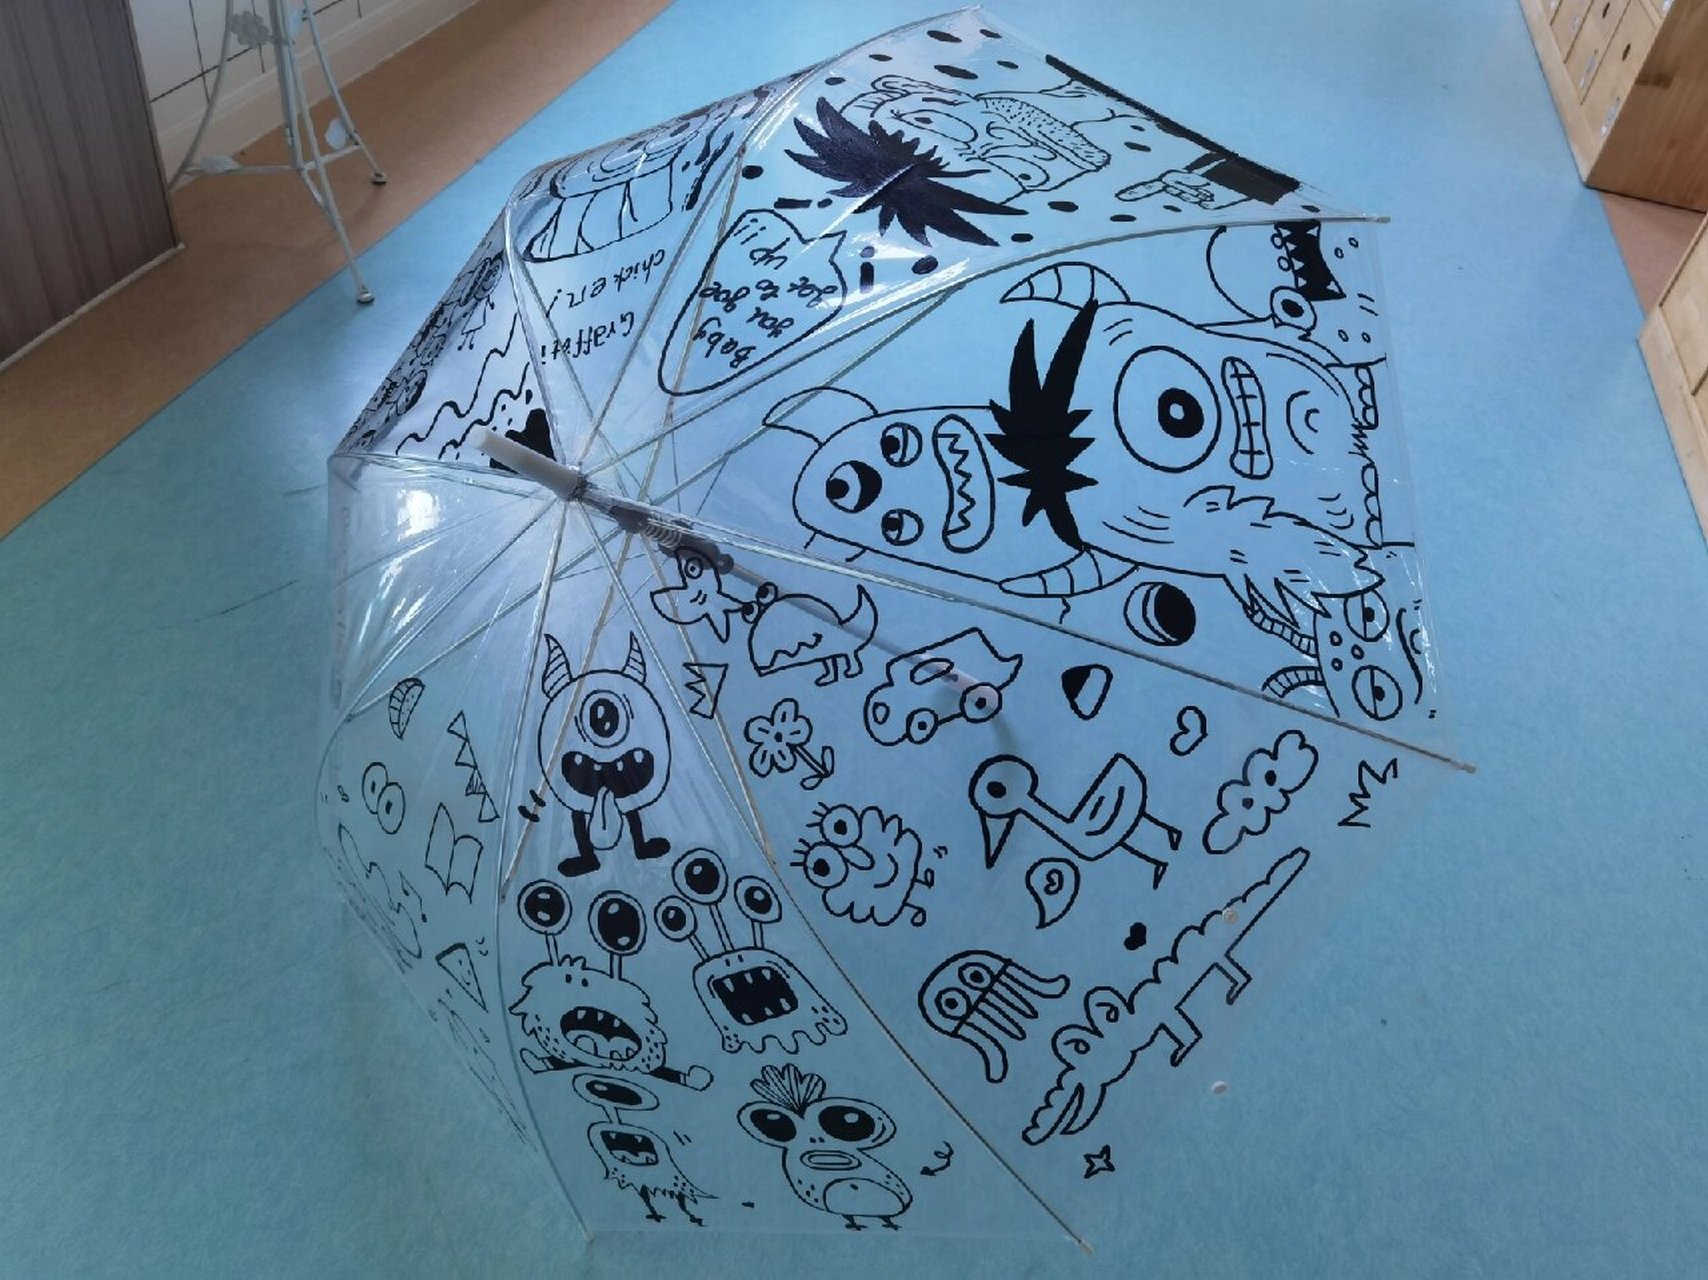 简笔画diy手绘透明雨伞 可爱卡通人物雨伞 透明的雨伞是朋友送的 觉得